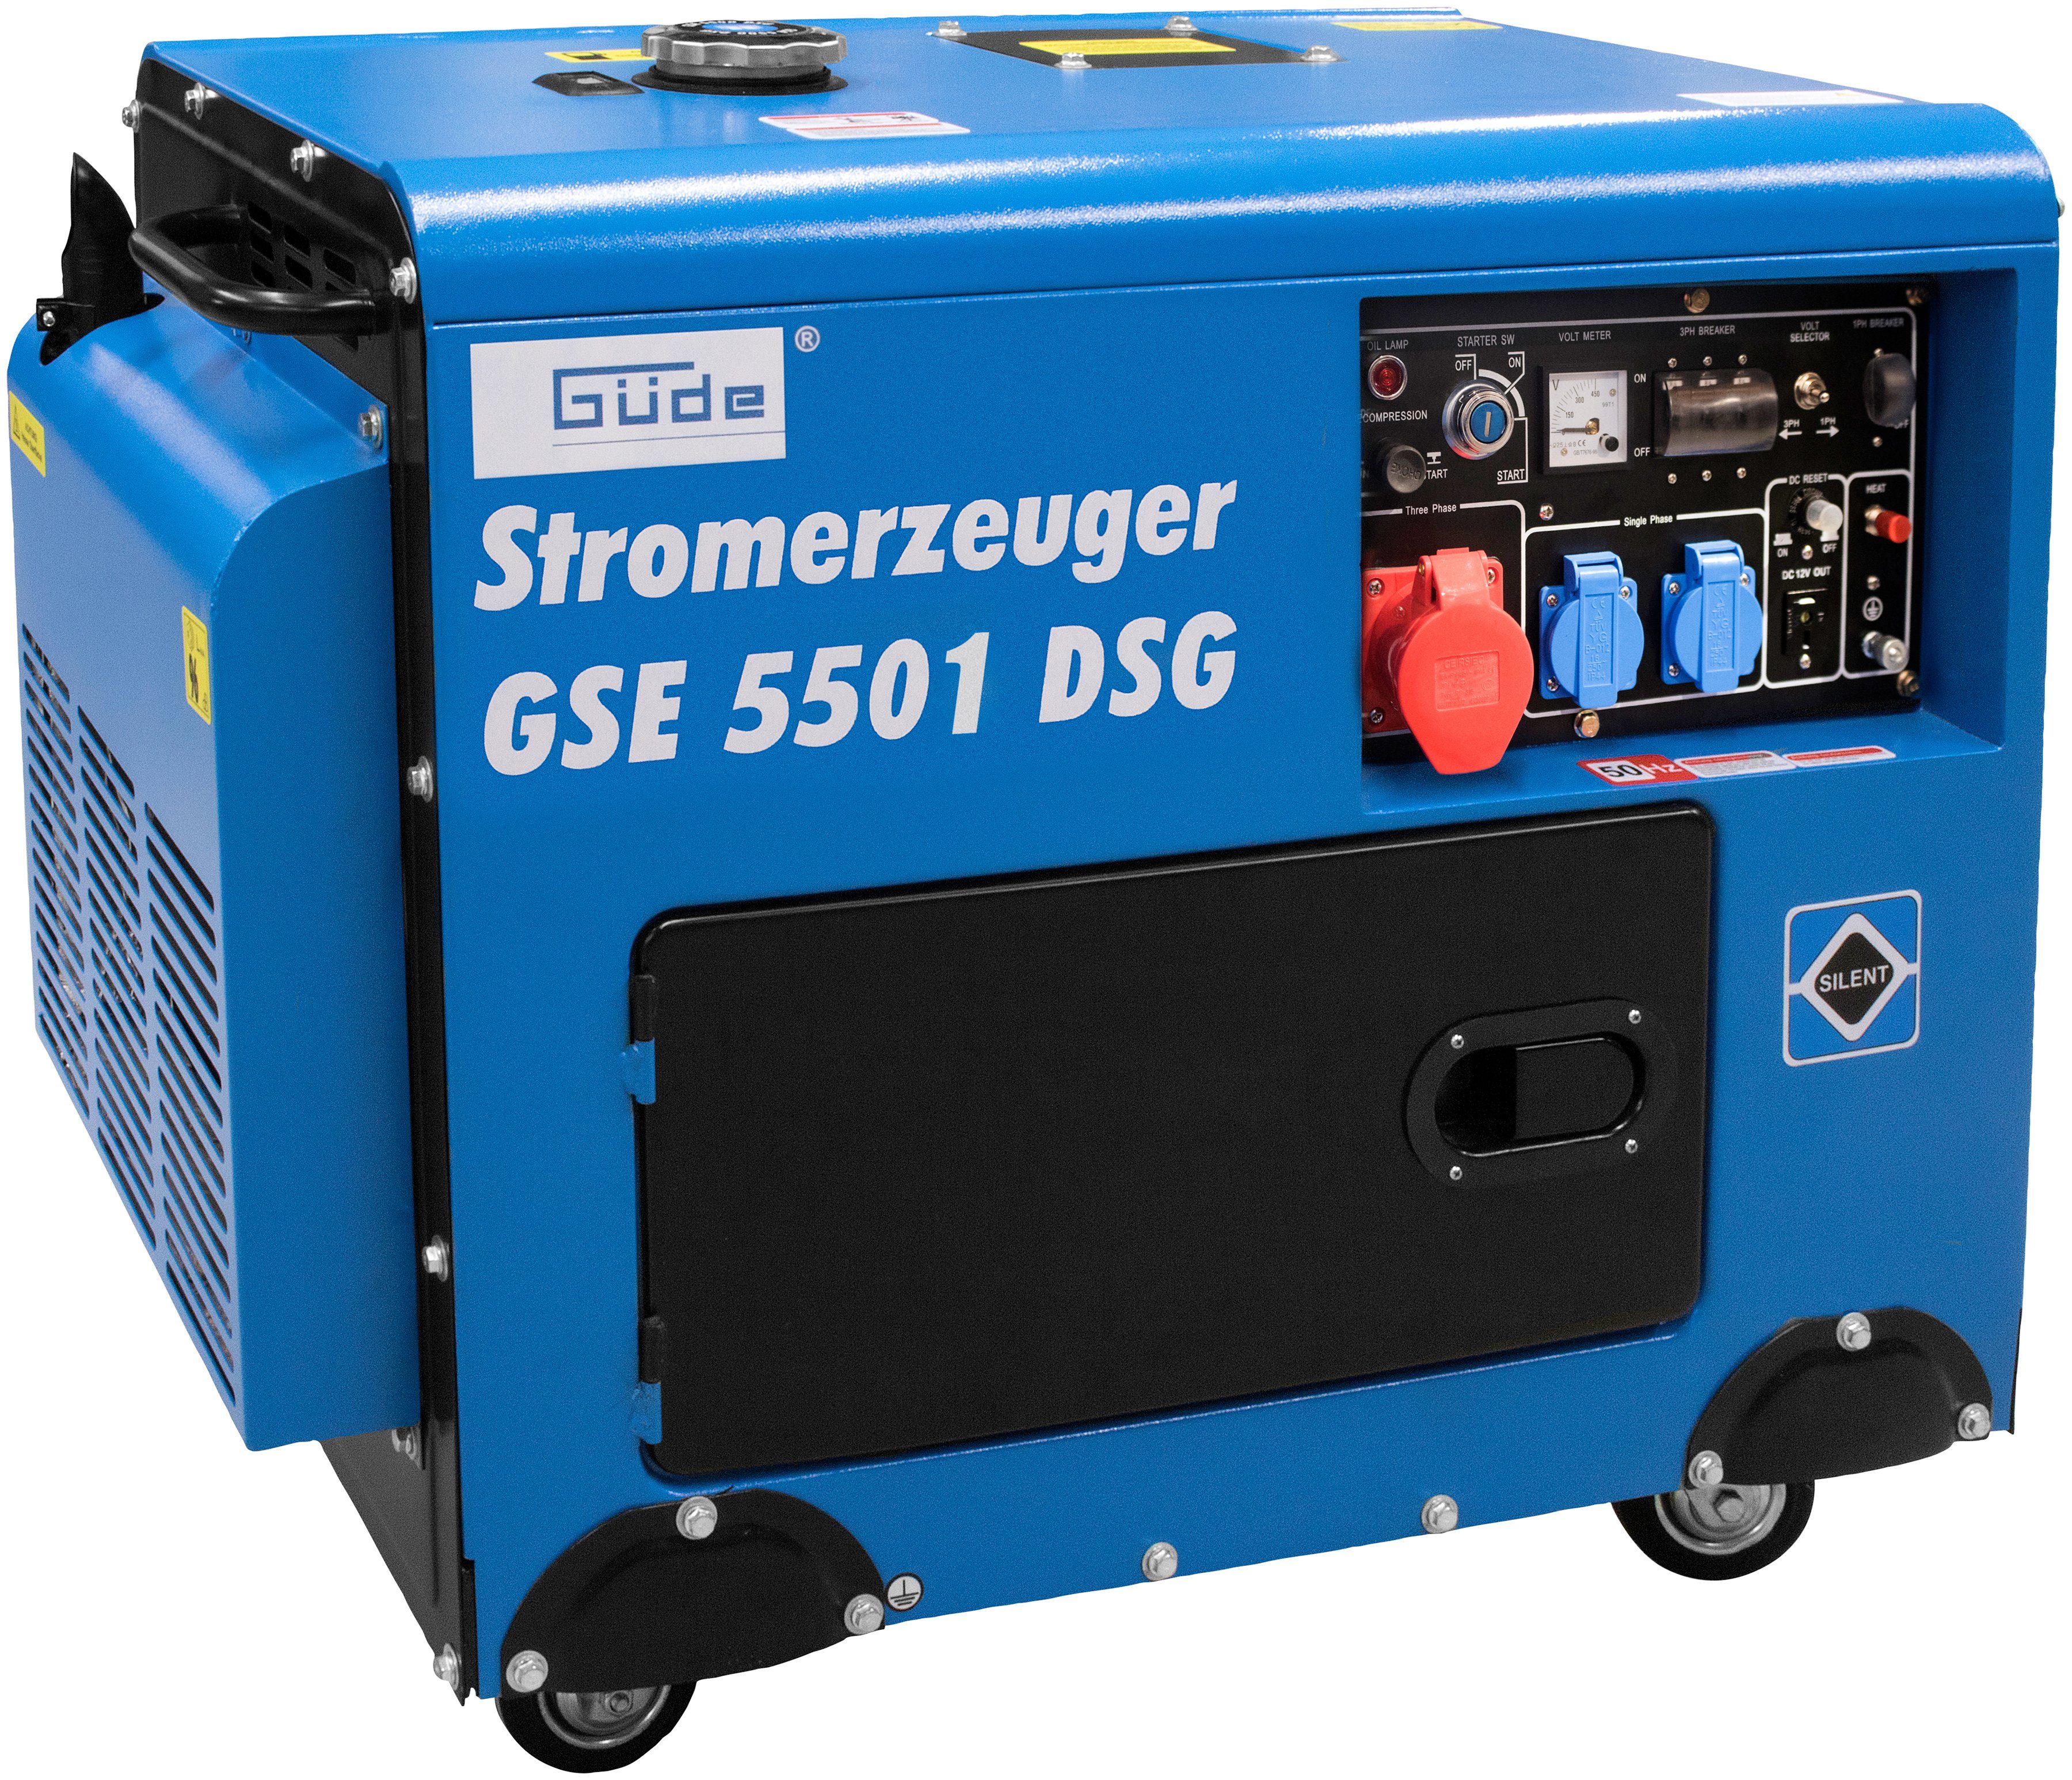 V/50 6,5 Güde x in GSE kW, Schuko A/400 230 Hz CEE DS, Stromerzeuger V/50 x 2 16 5501 Hz, 1